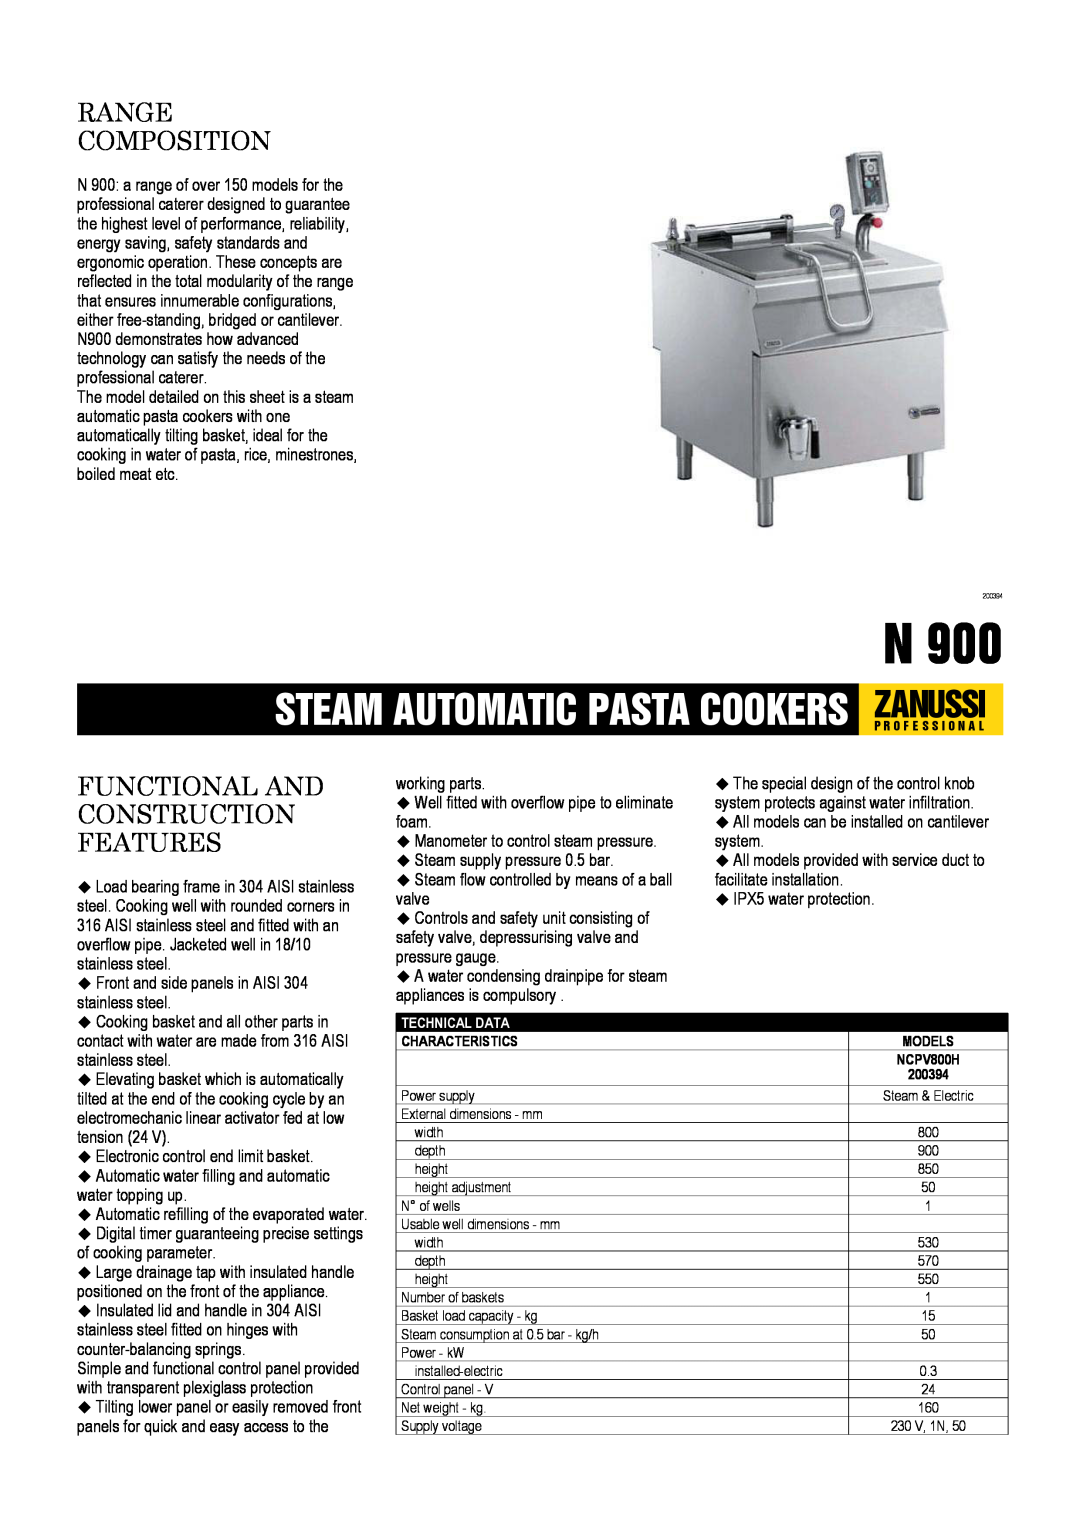 Zanussi 200394, NCPV800H dimensions Steam Automatic Pasta Cookers Zanussip R O F E S S I O N A L, Range Composition 